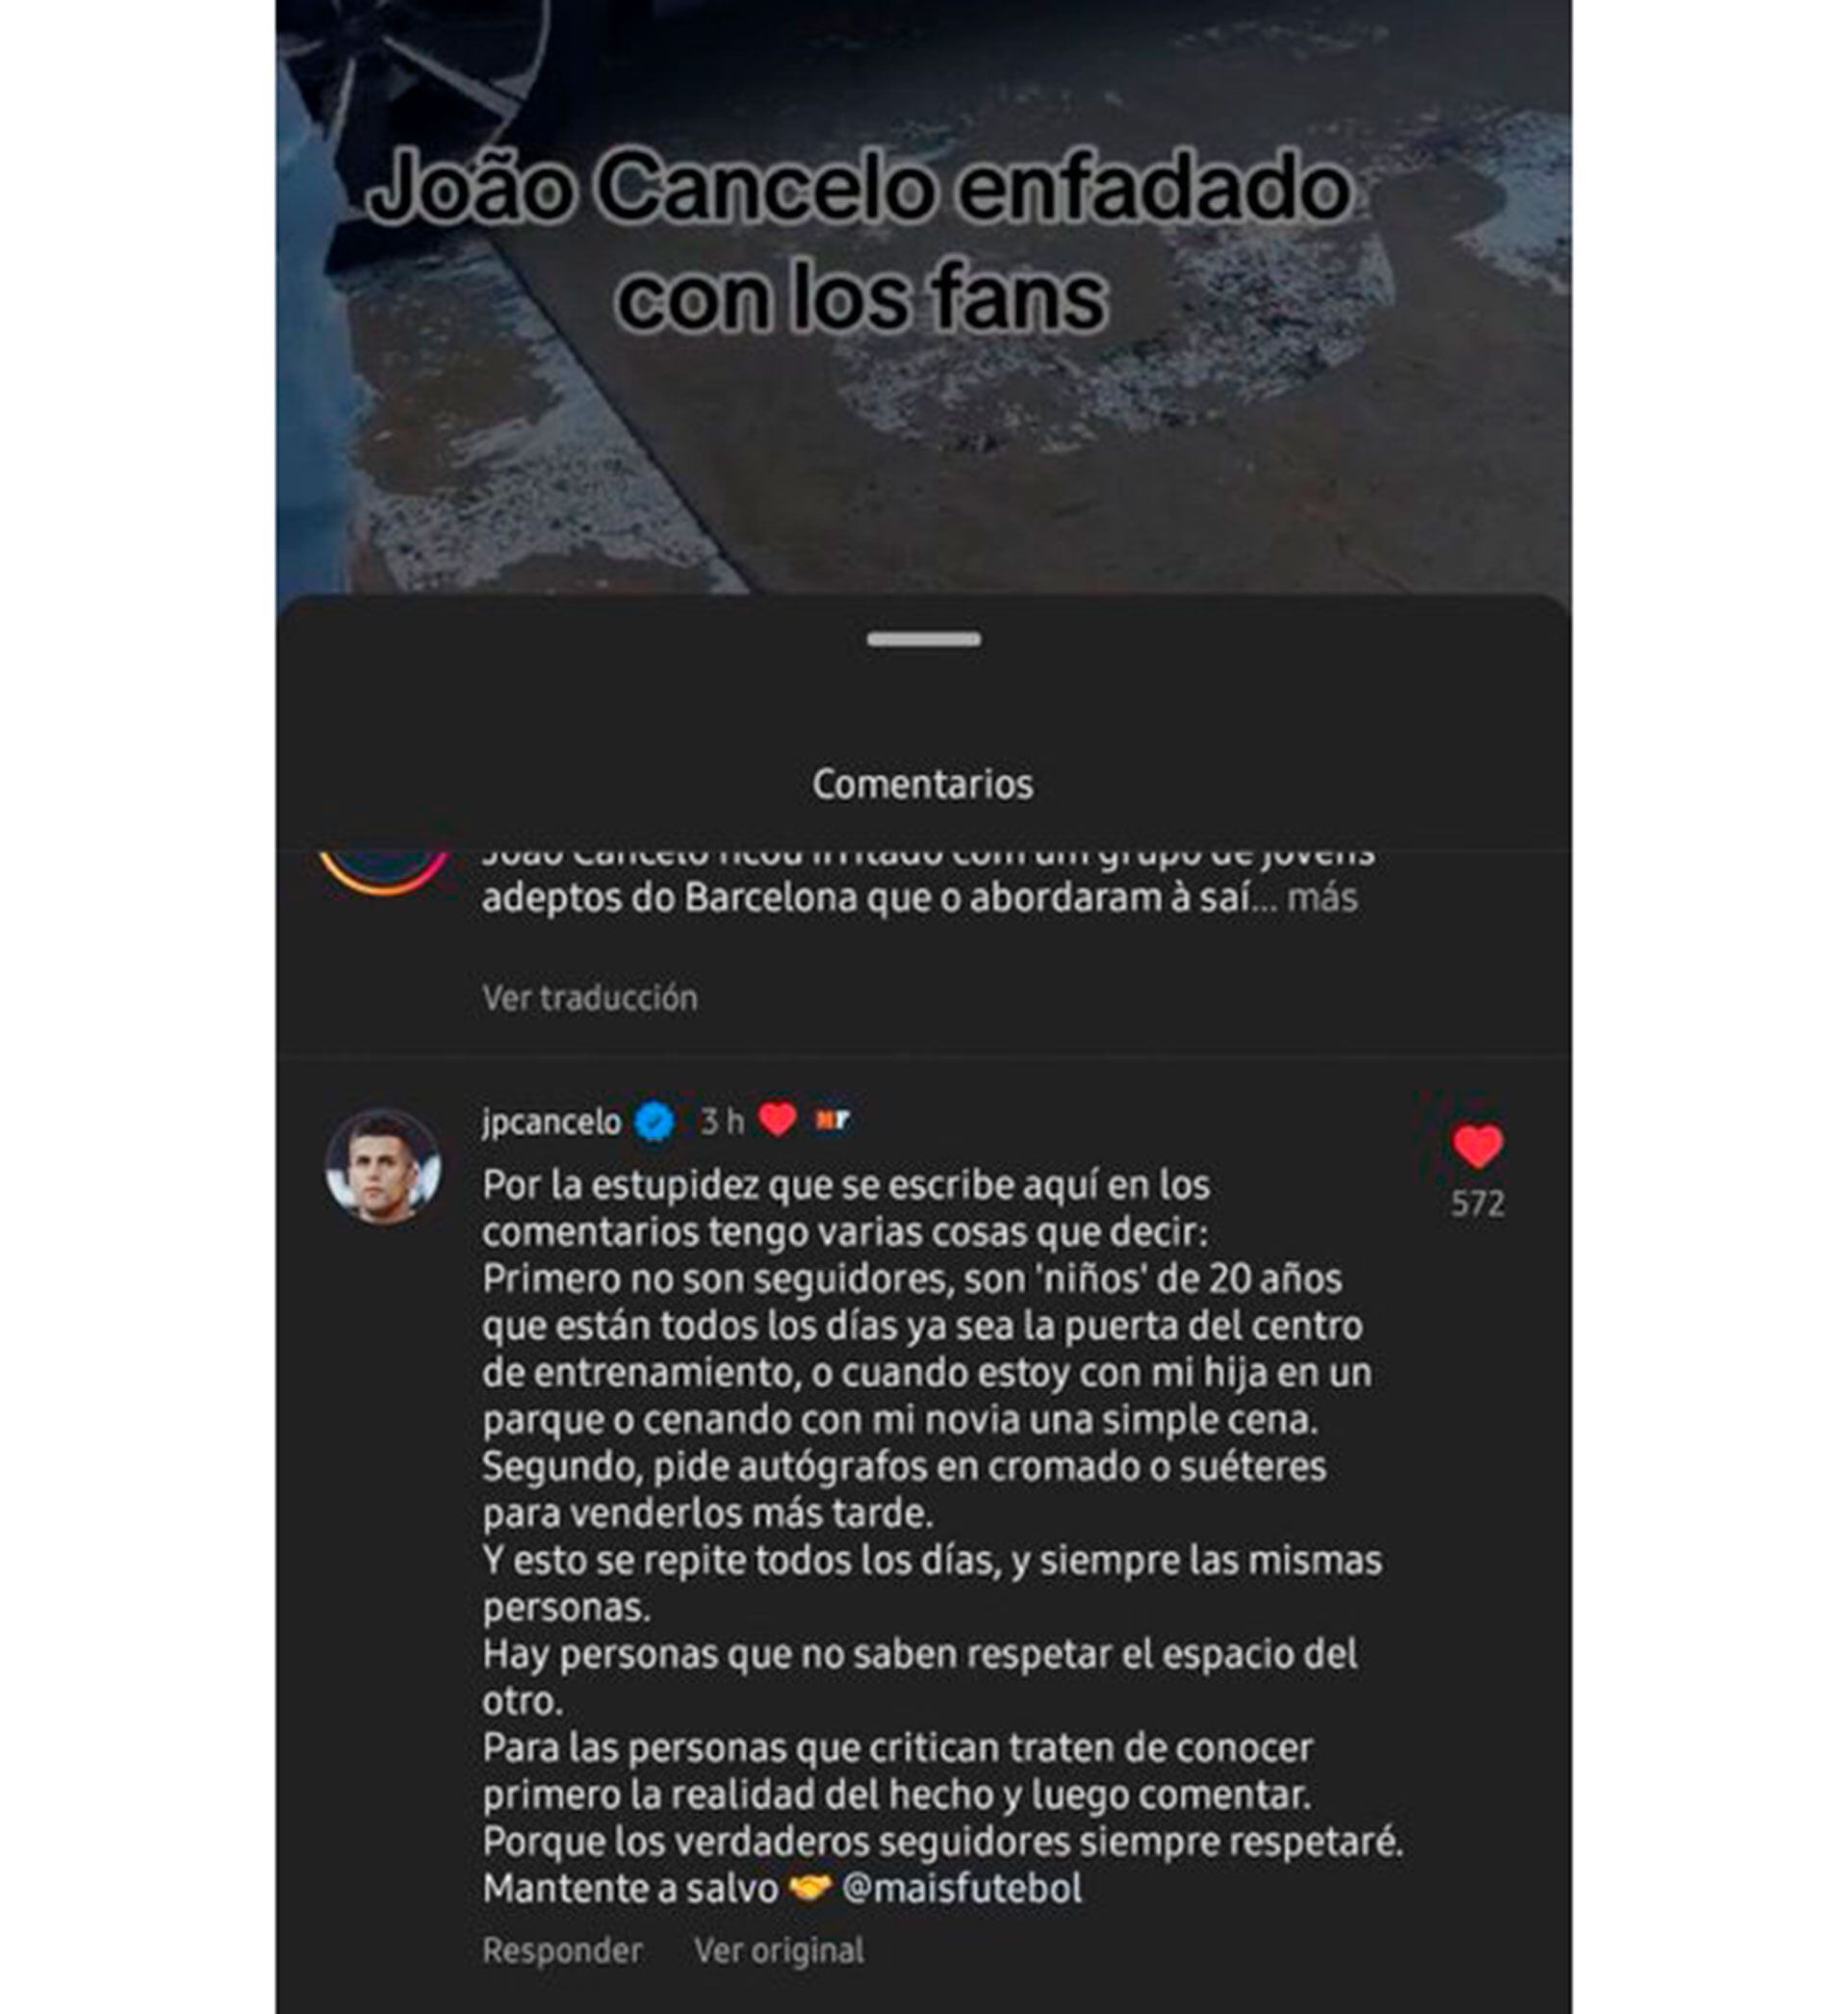 La respuesta de Joao Cancelo al ser criticado por su actitud con unos fanáticos del Barcelona.